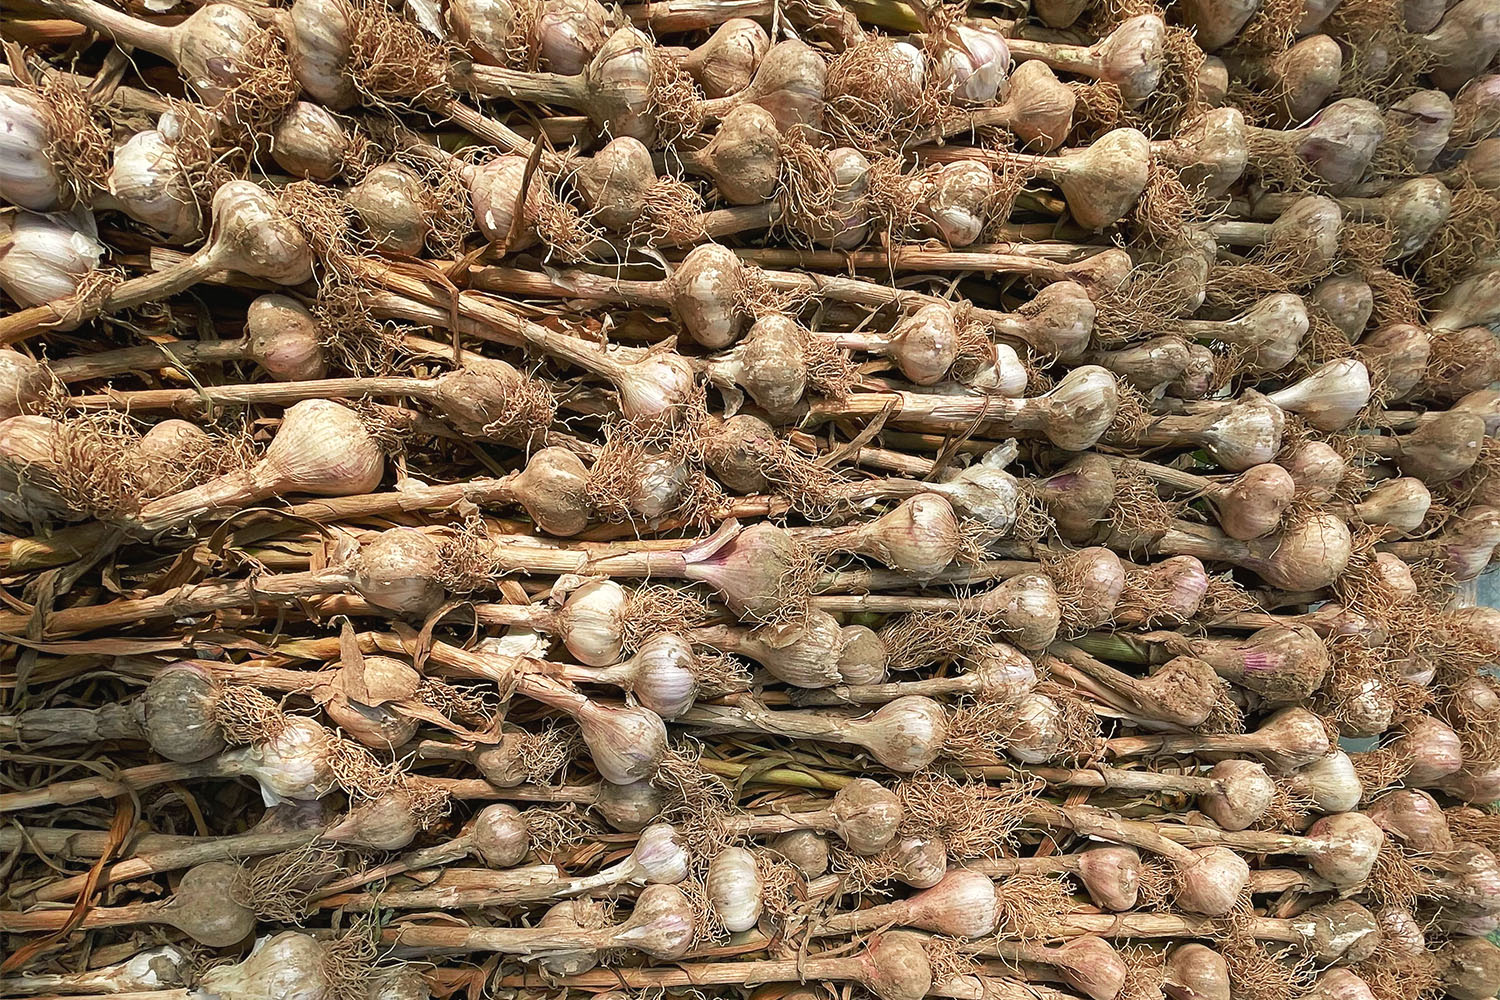 Piles of garlic 